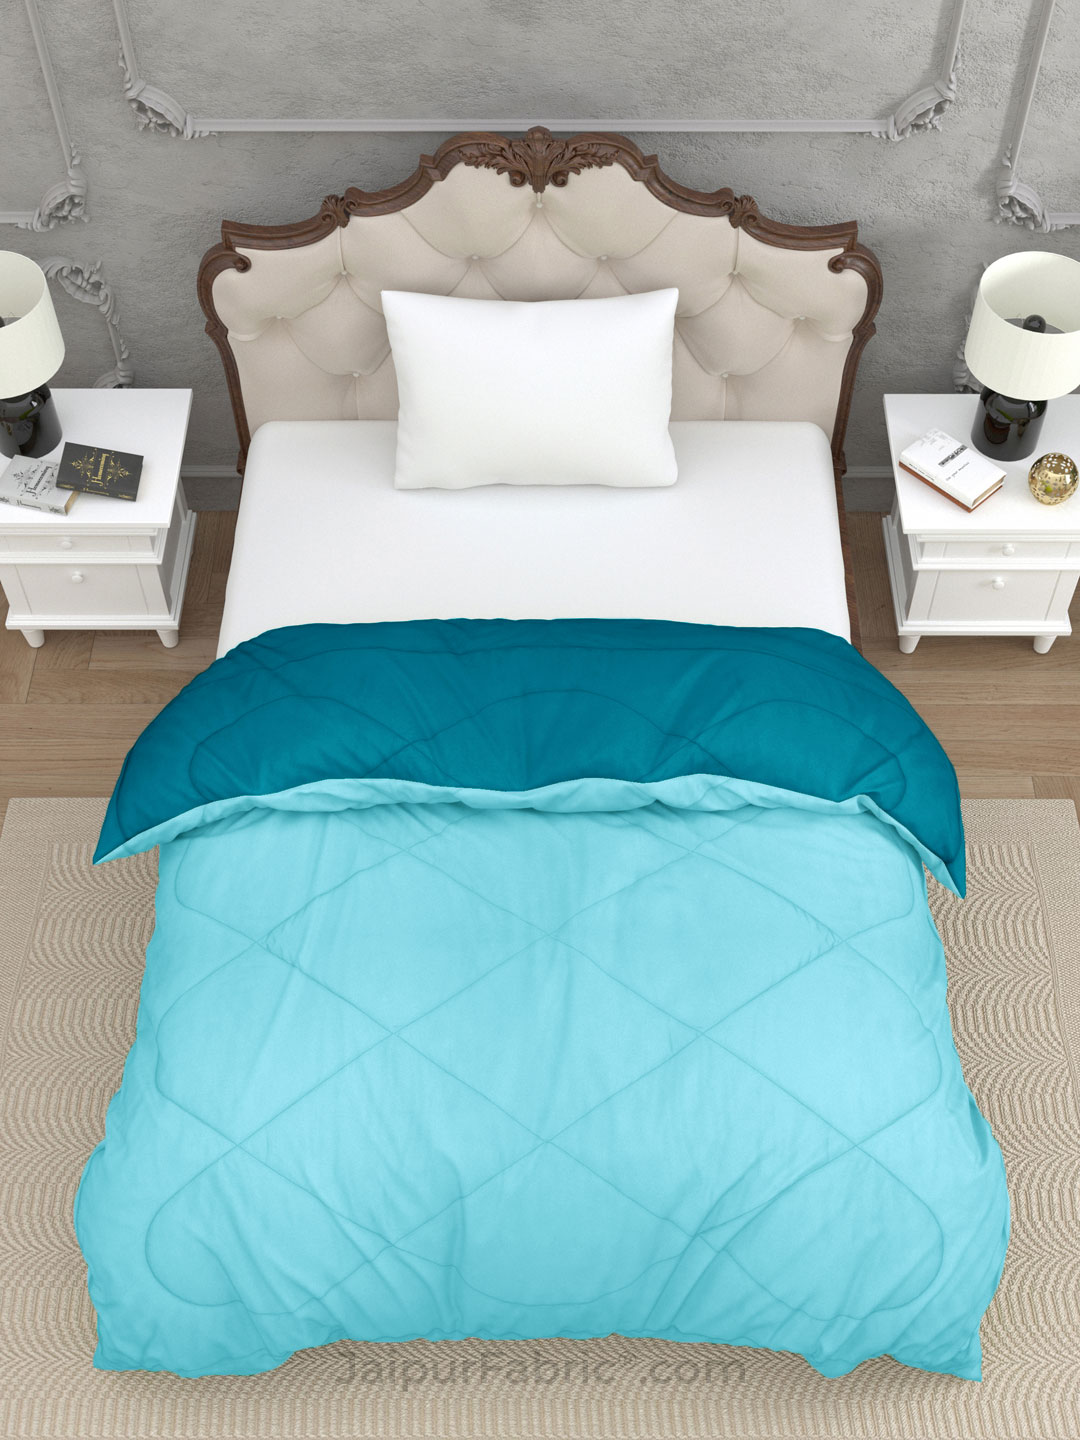 Teal Blue Ocean Blue Single Bed Comforter